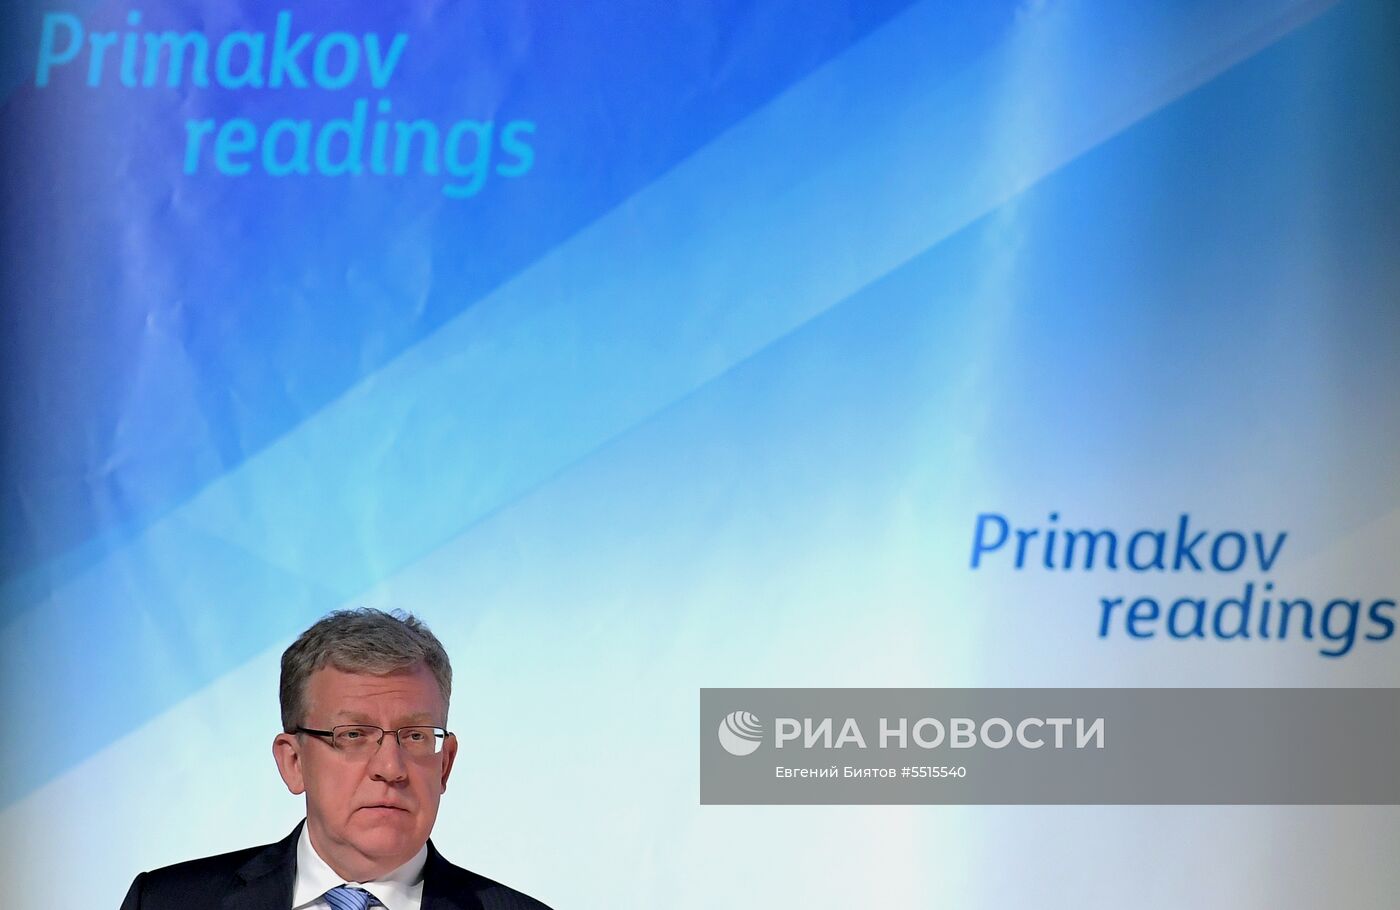 IV Международный форум «Примаковские чтения». День второй  